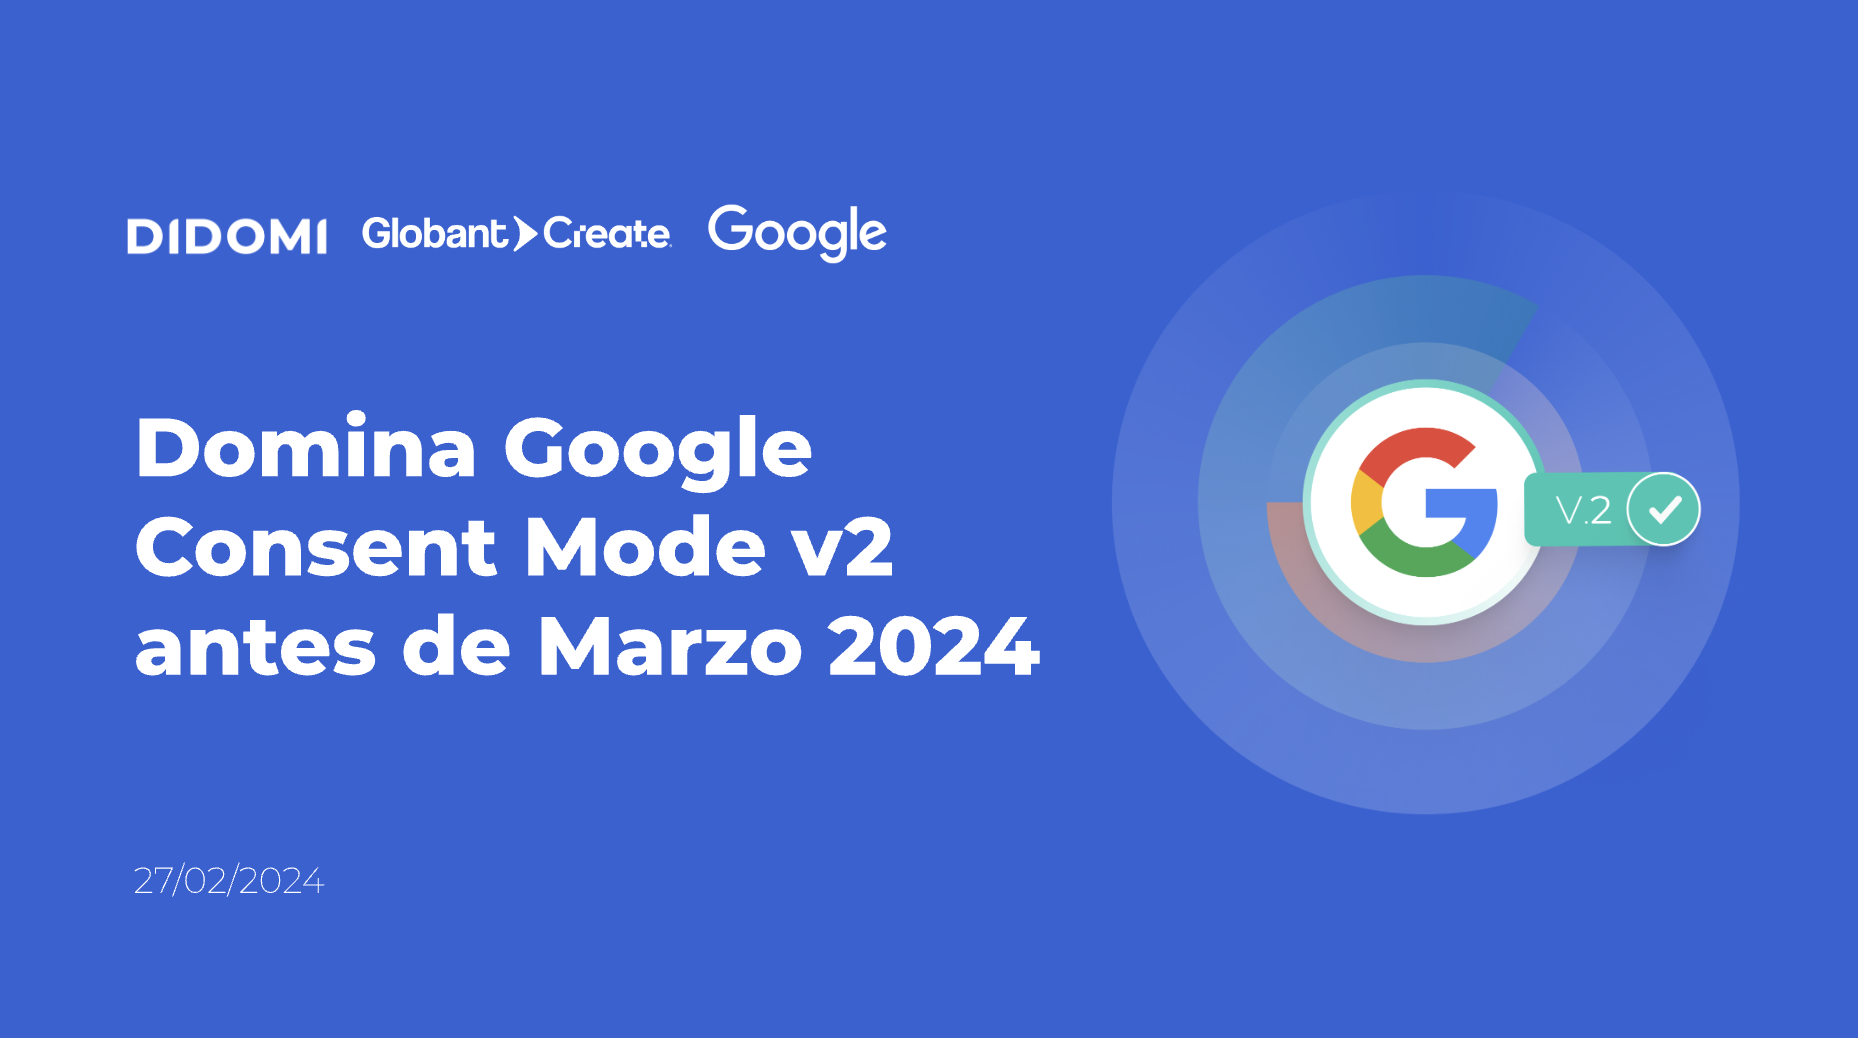 Didomi - Domina Google Consent Mode v2 antes de Marzo 2024